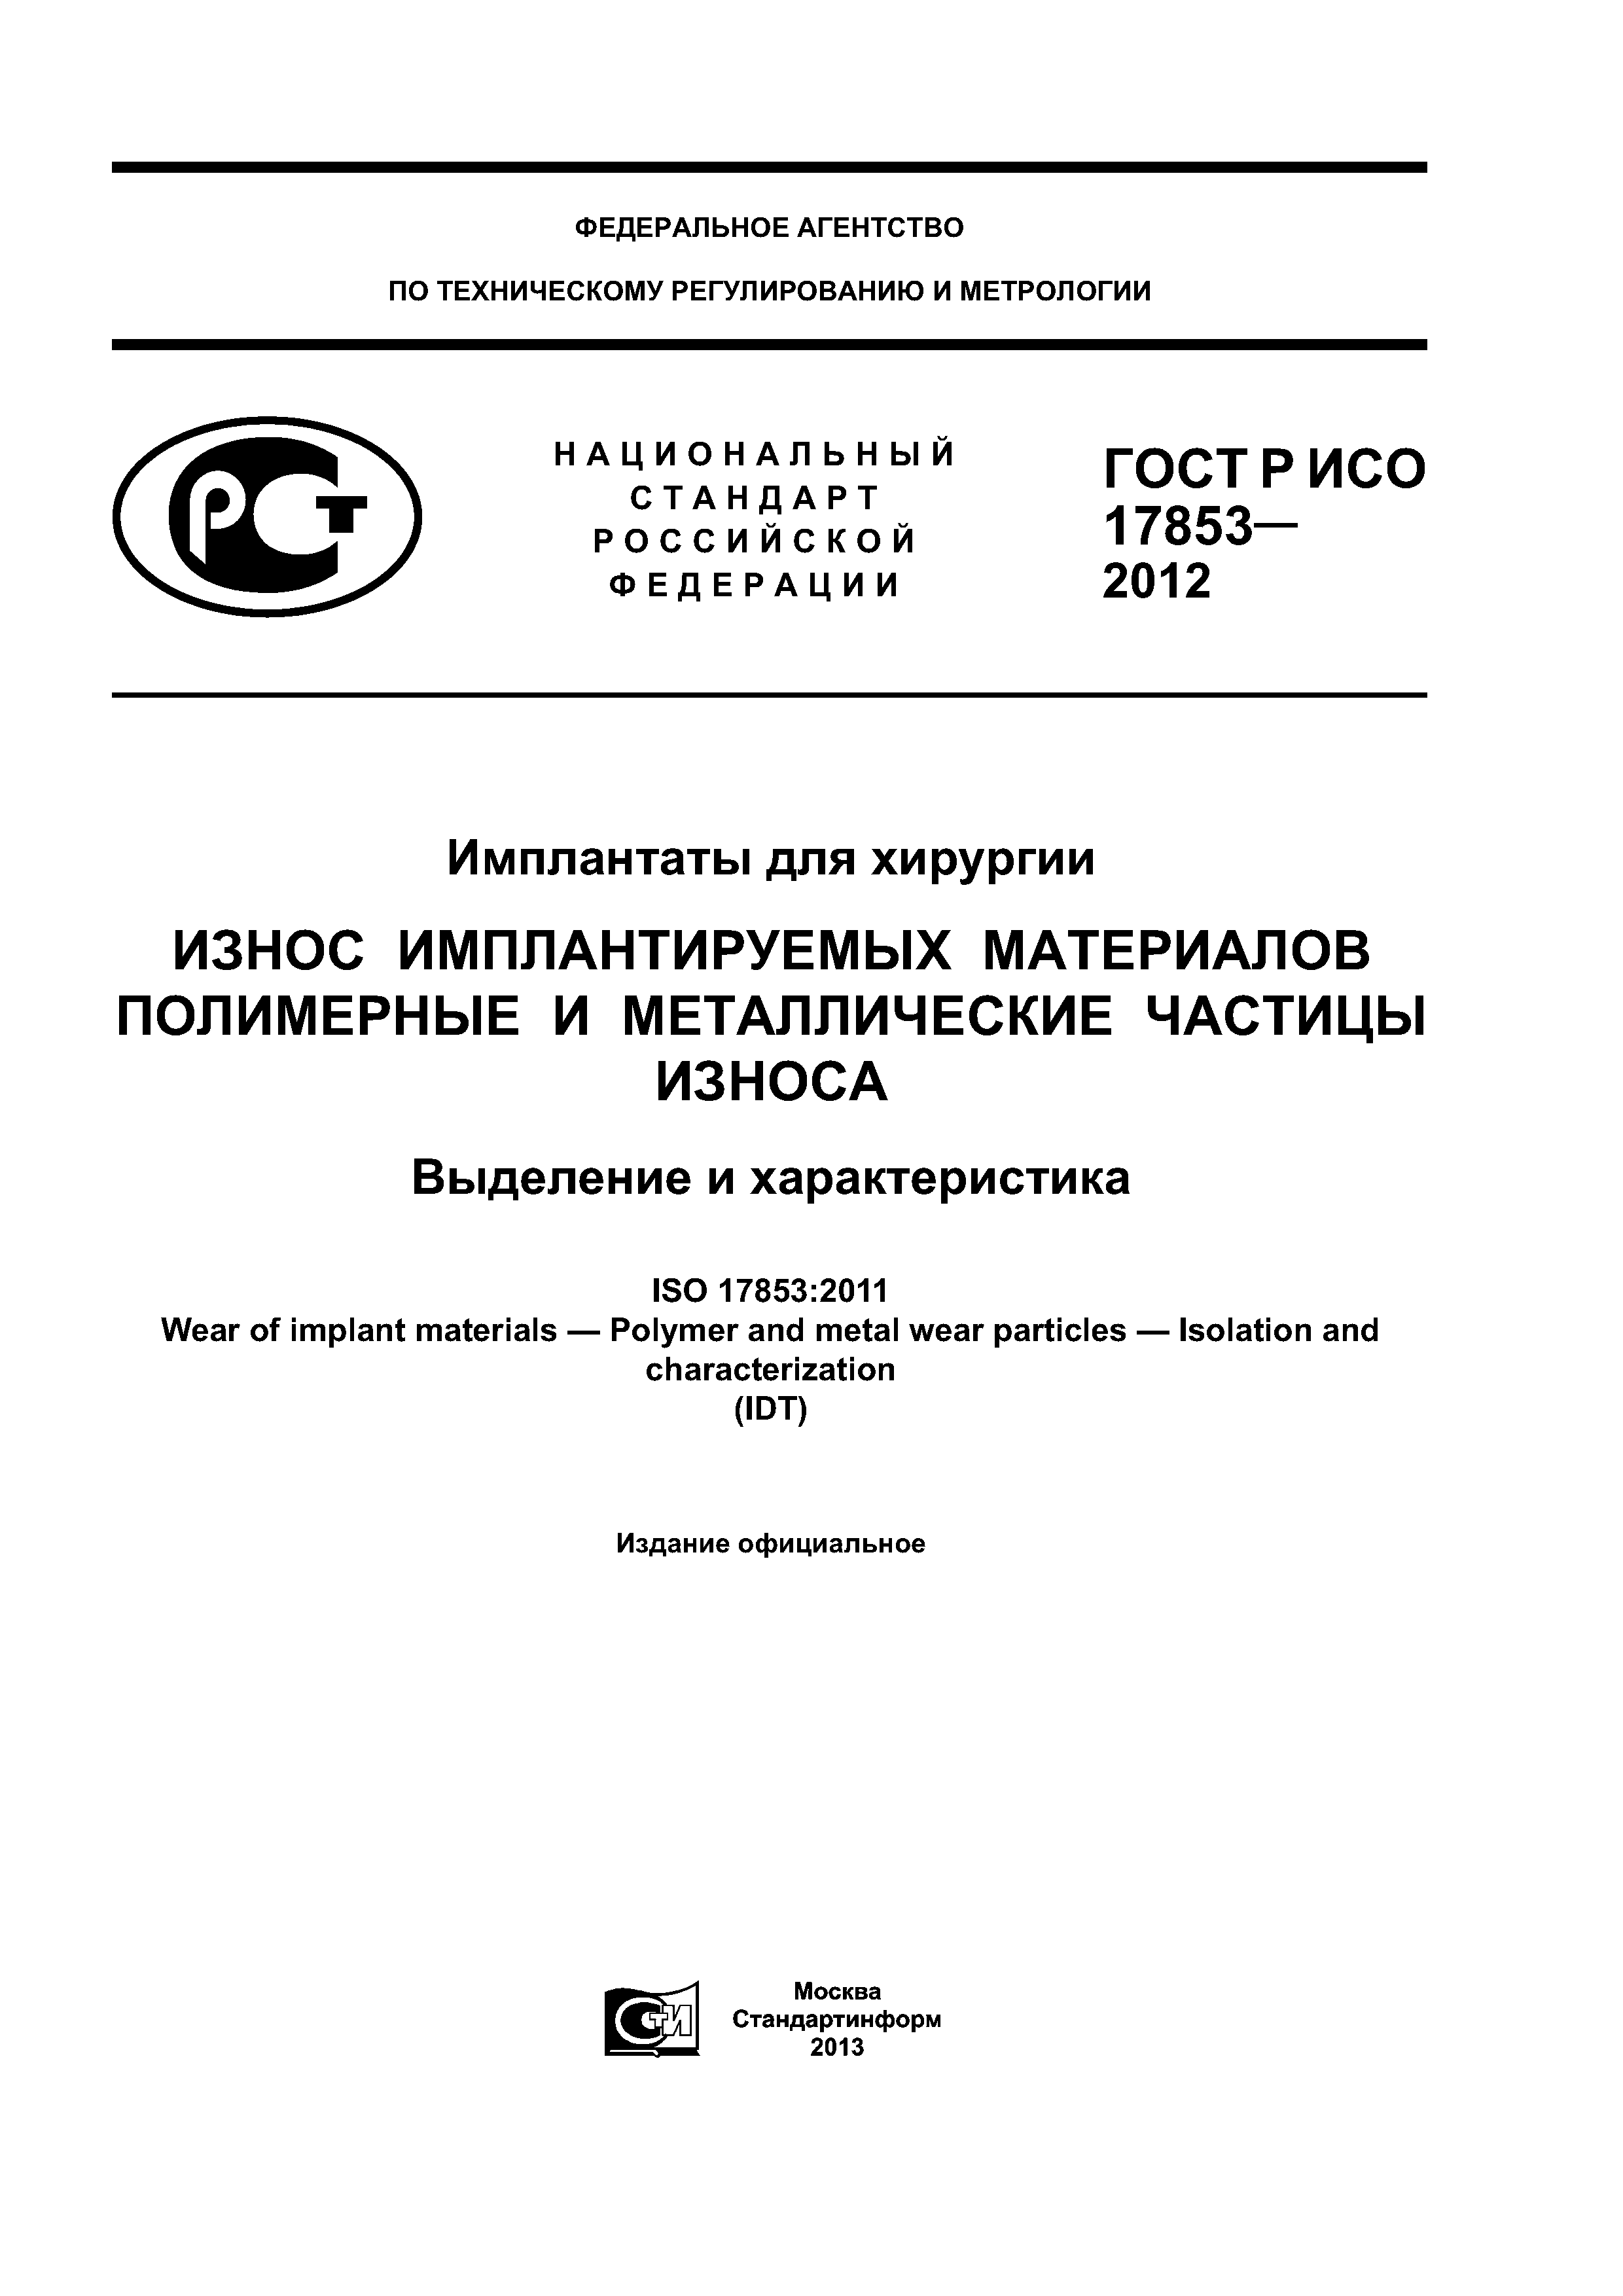 ГОСТ Р ИСО 17853-2012